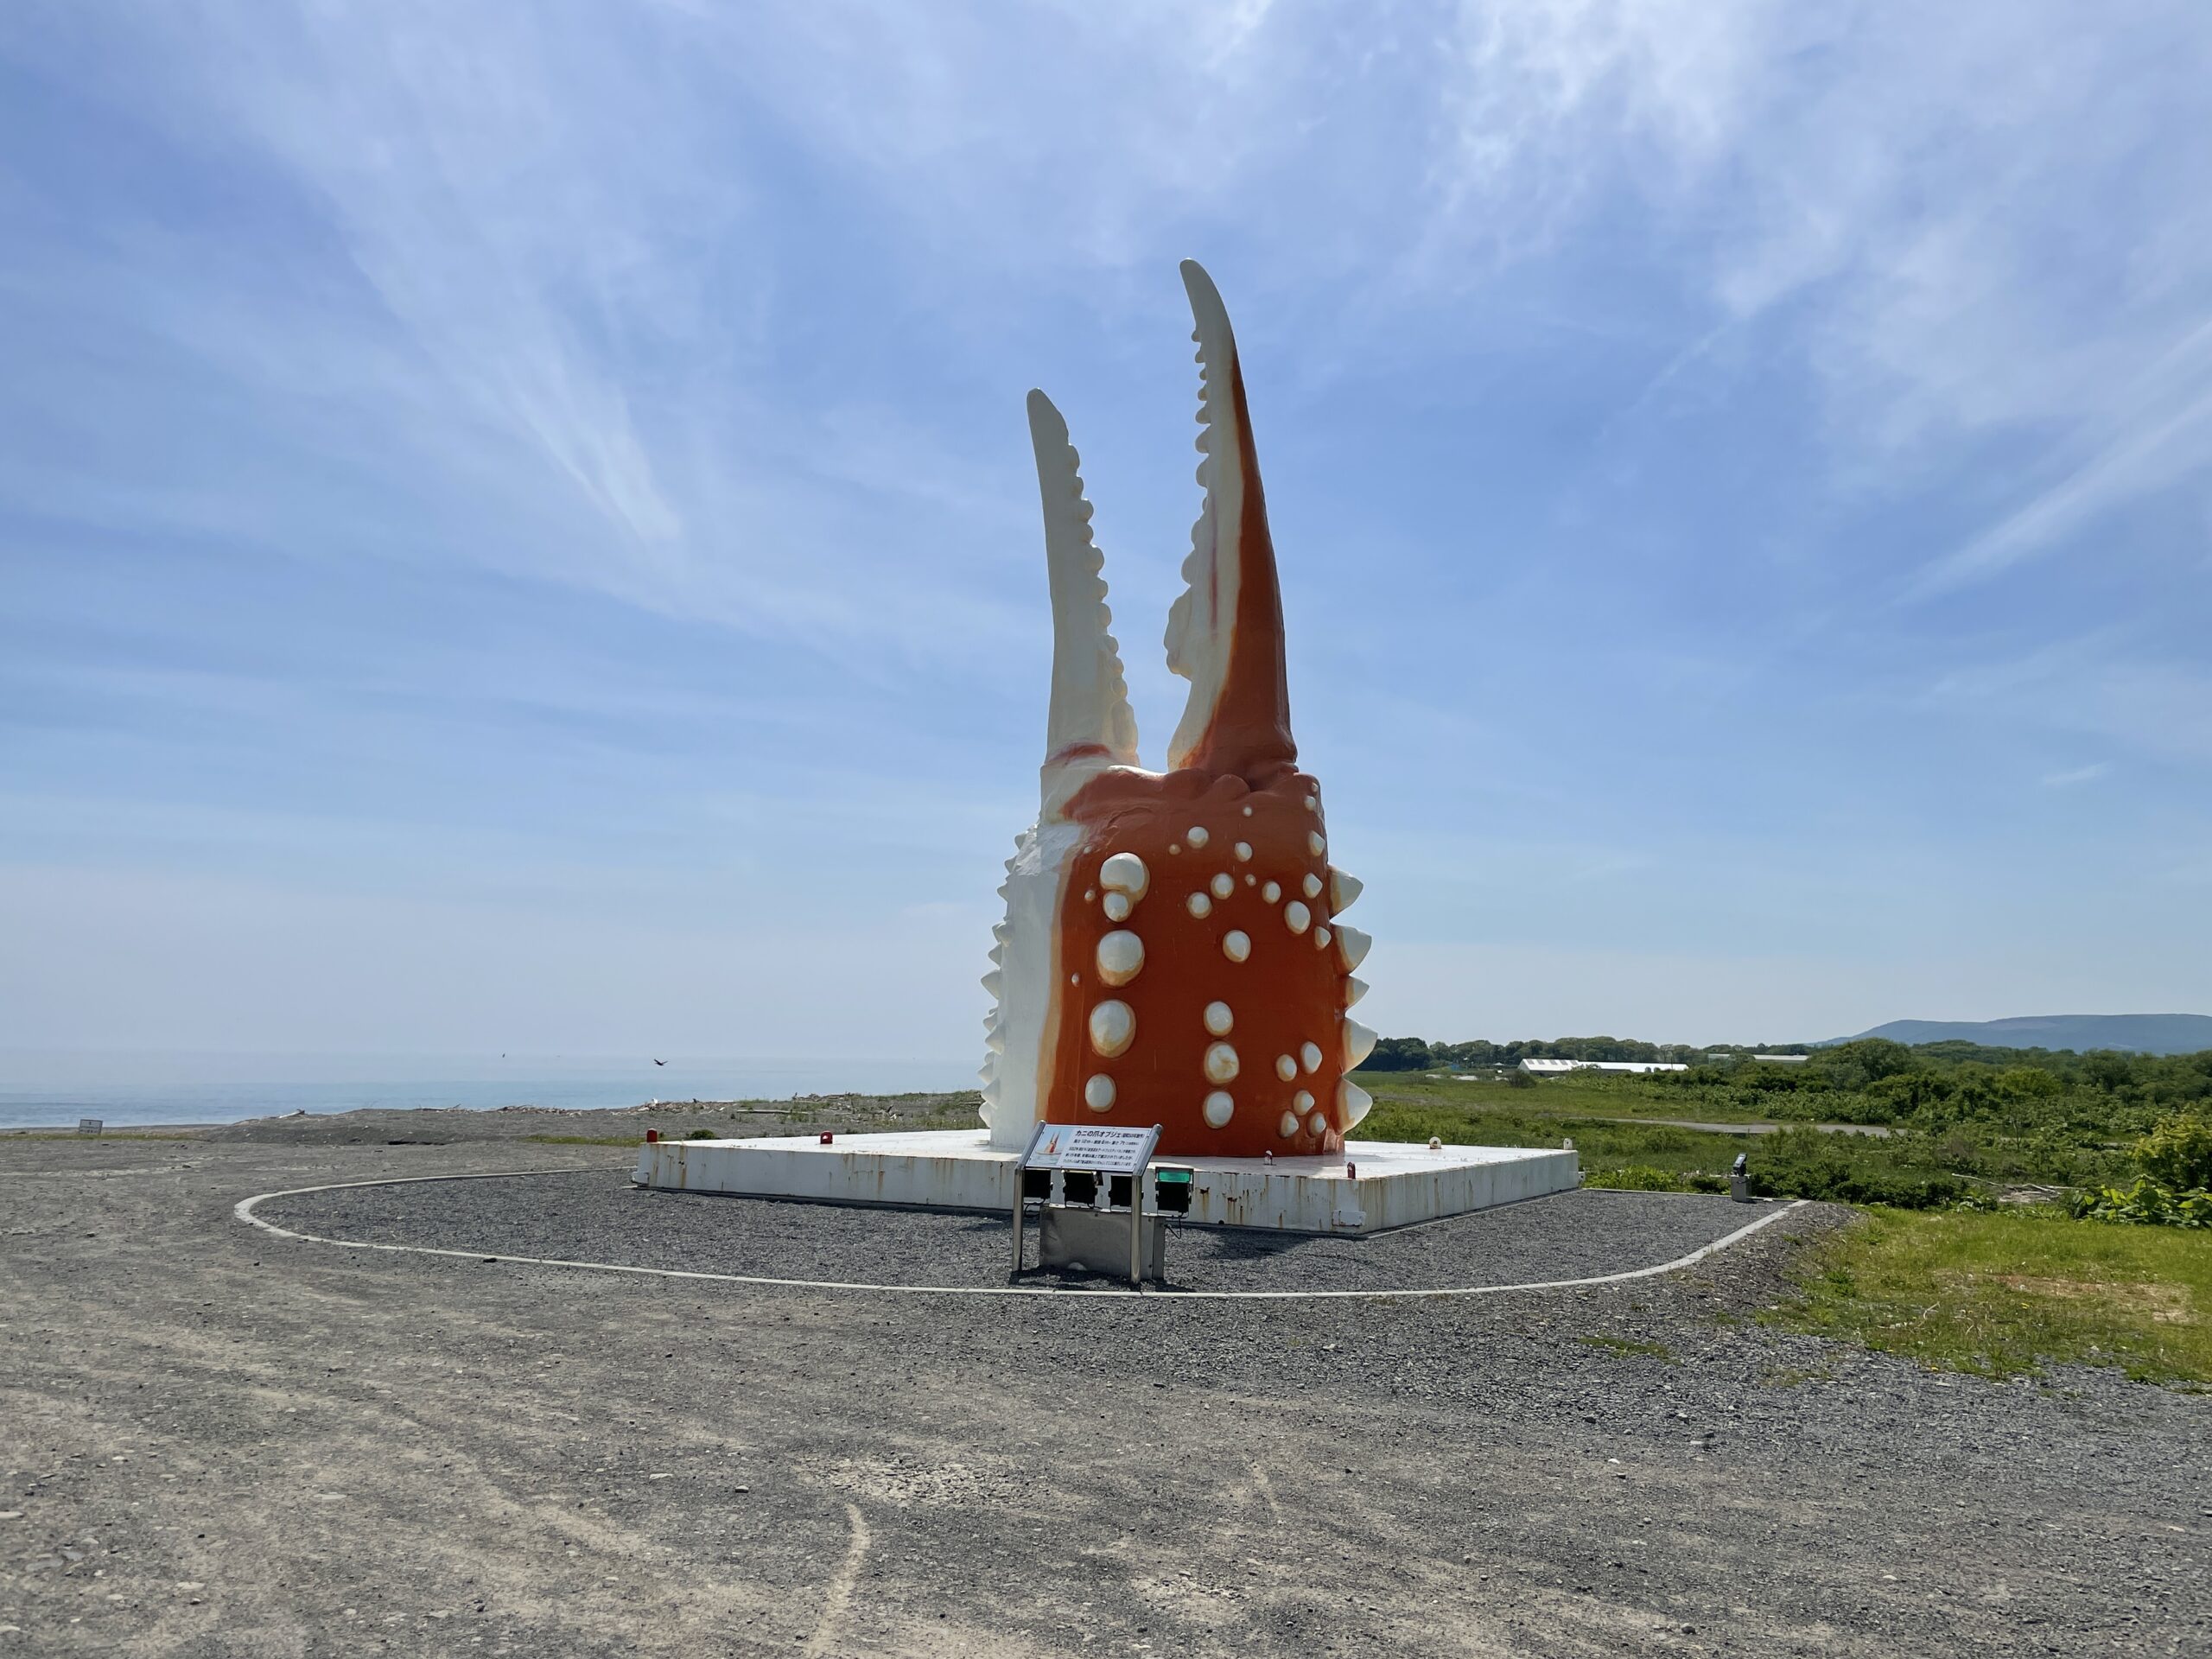 Der Krabbe wird am Ortseingang von Mombetsu ein gebührendes Denkmal gesetzt